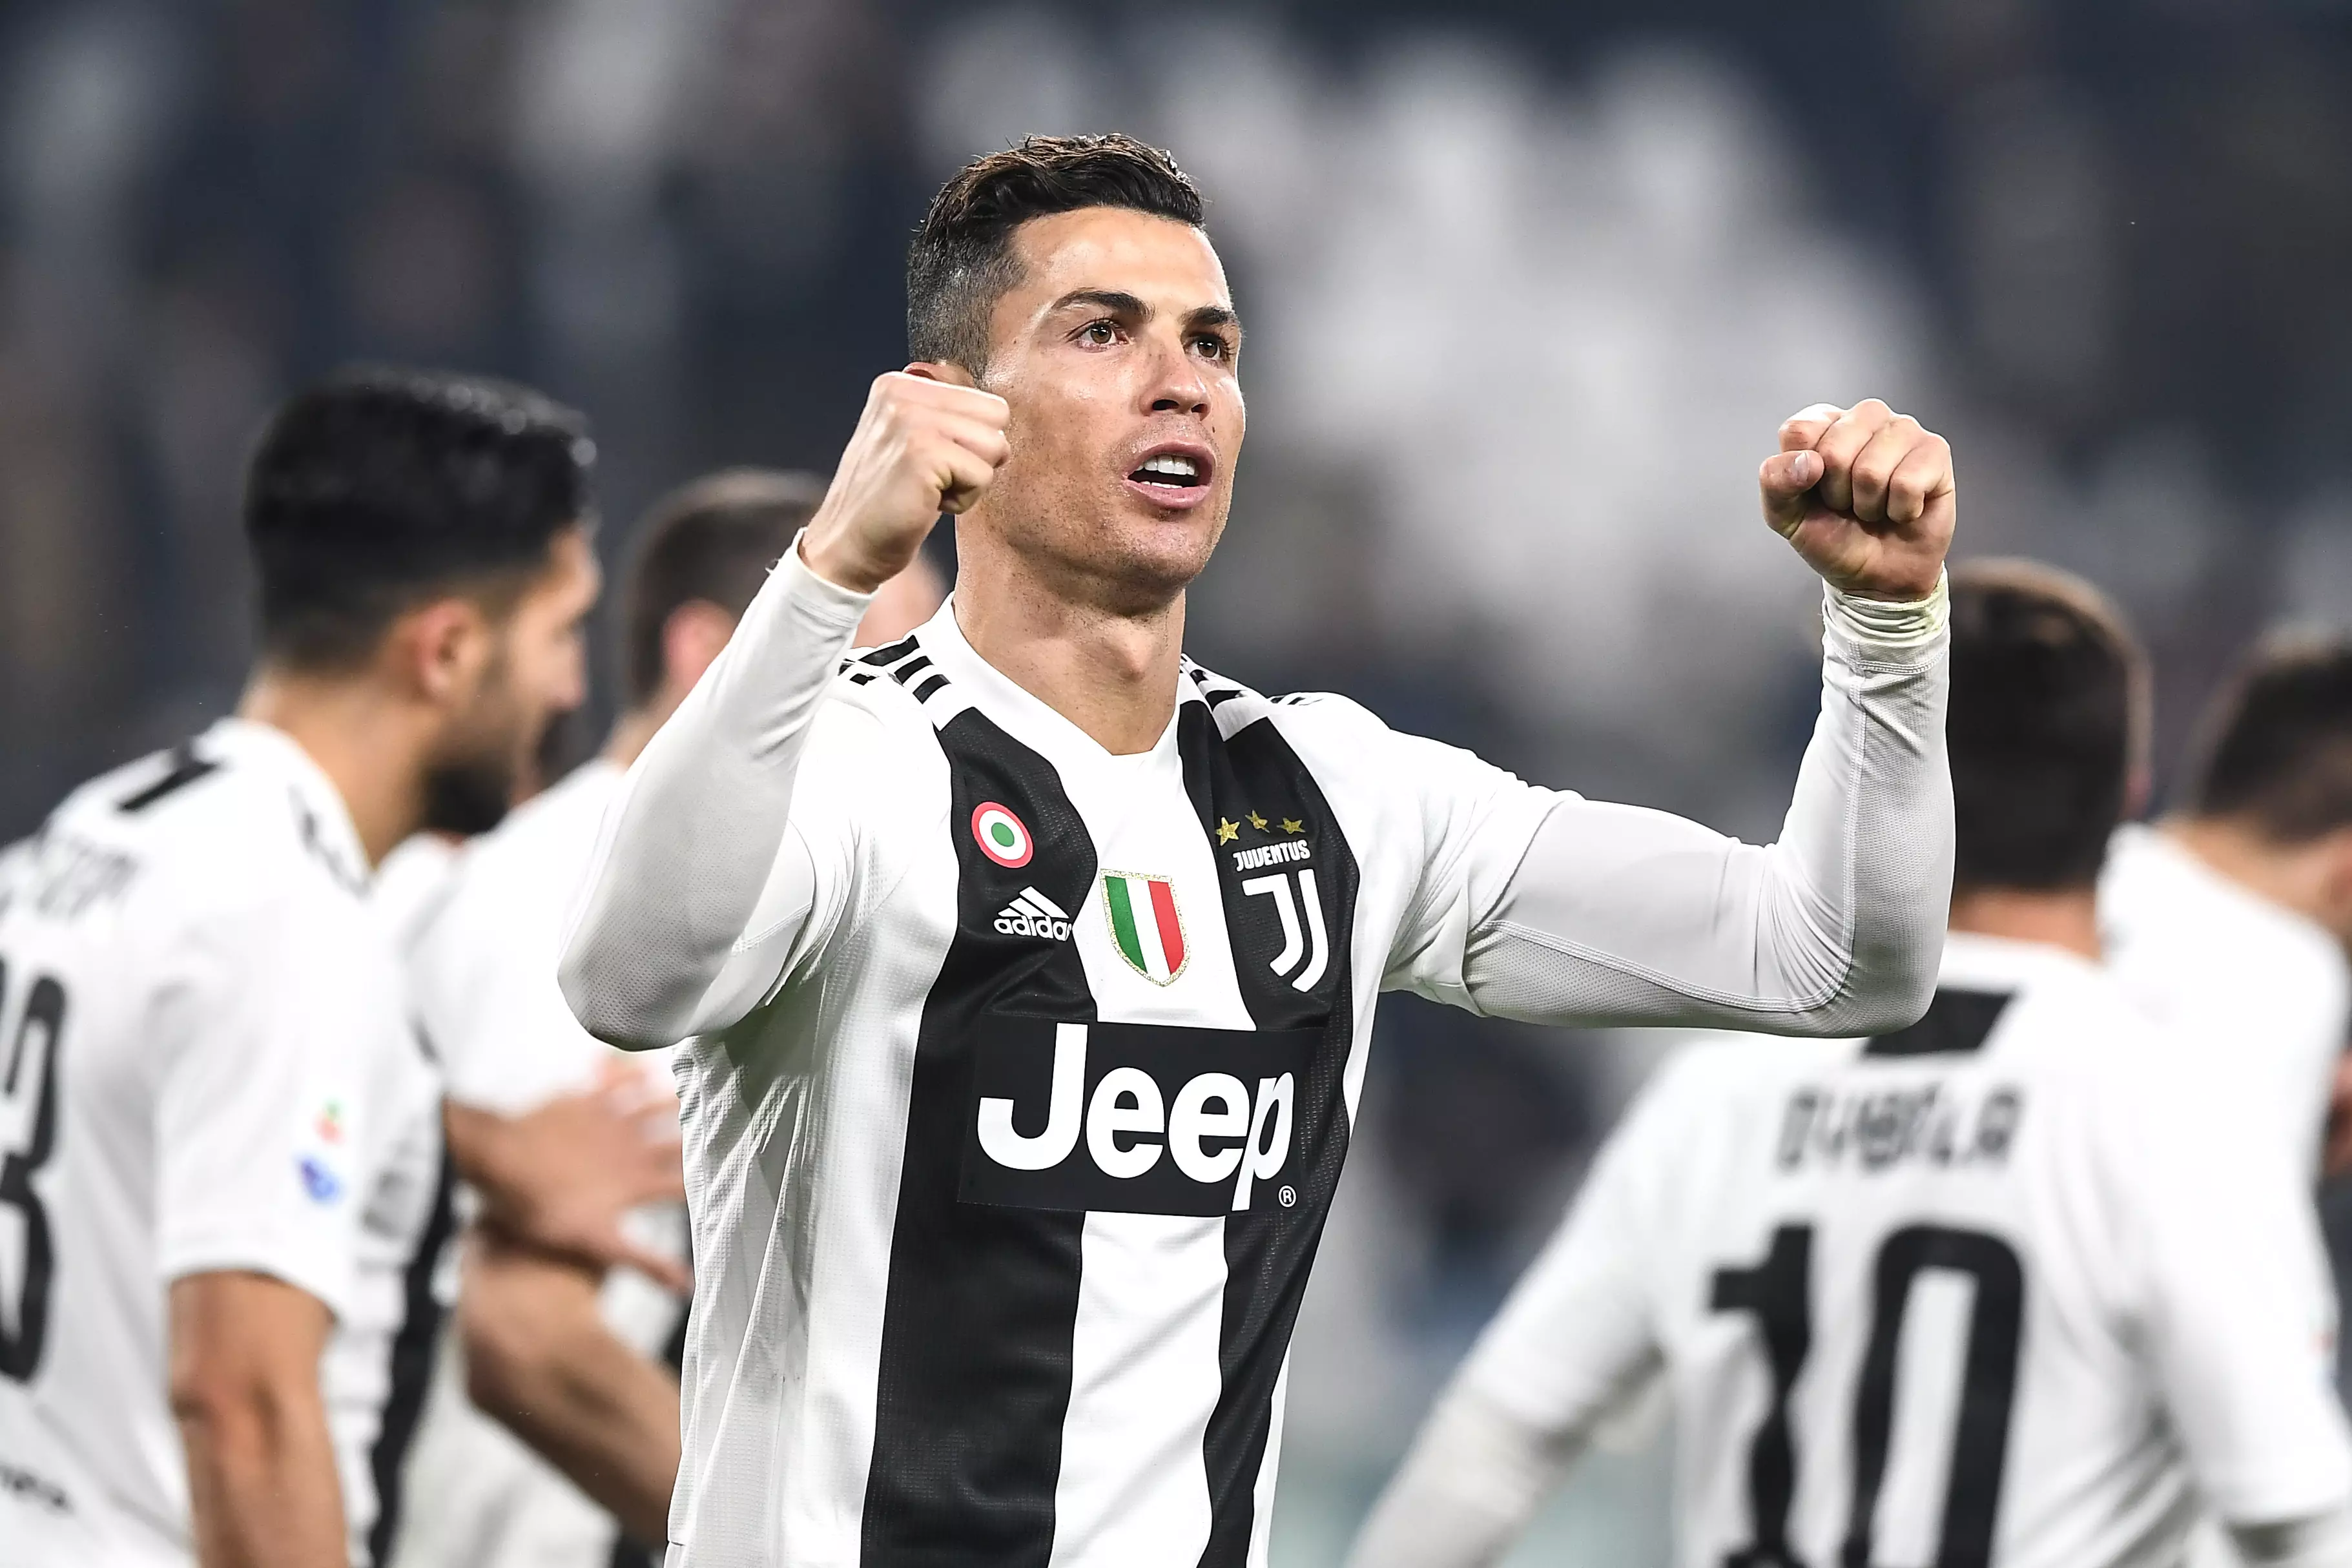 Ronaldo celebrates scoring for Juventus. Image: PA Images